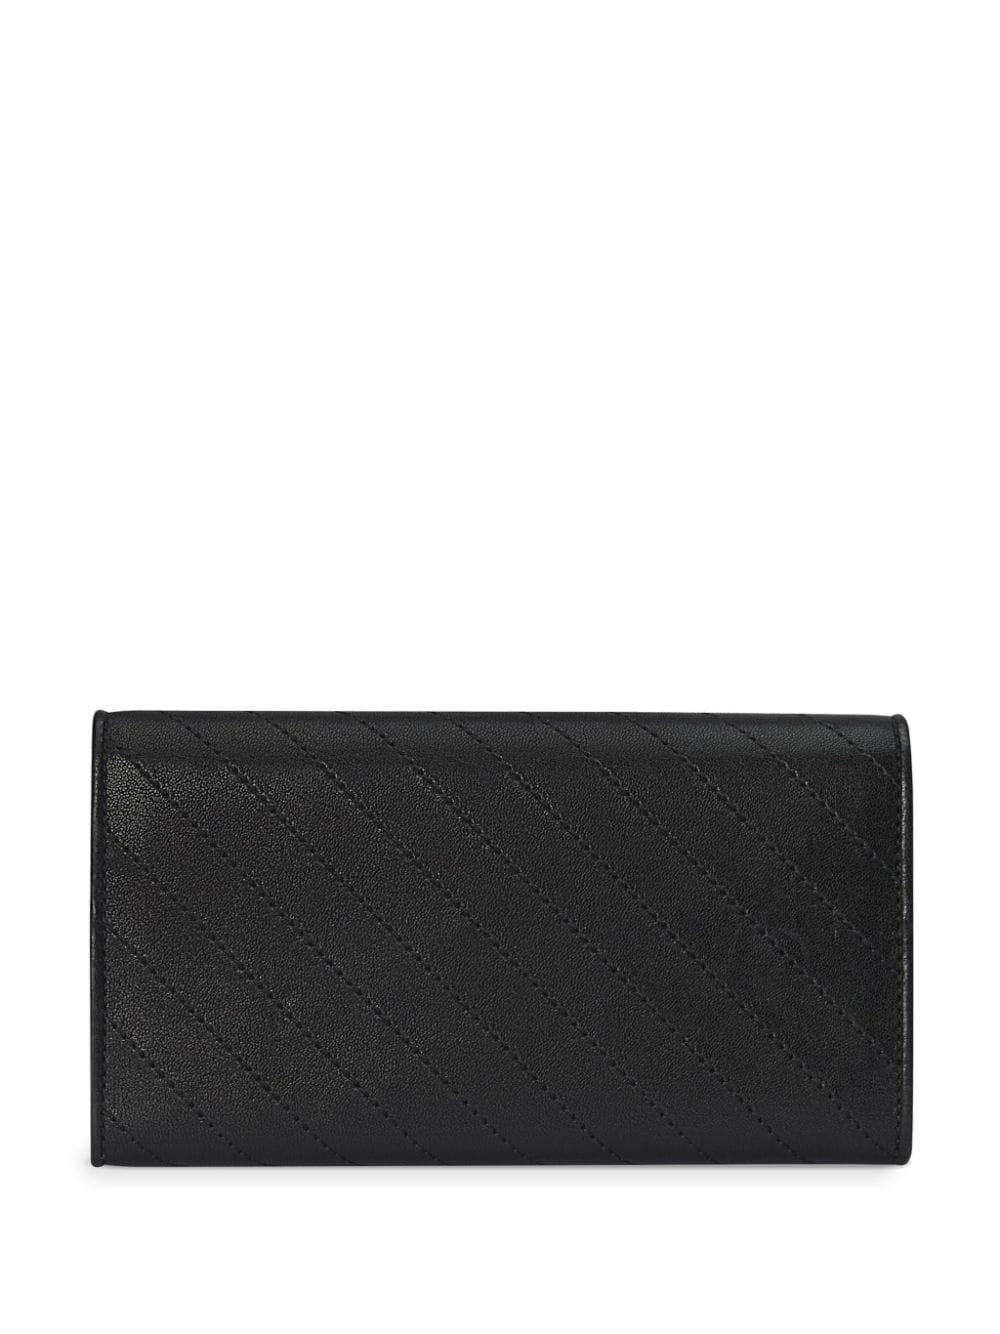 Gucci Blondie continental wallet - Black